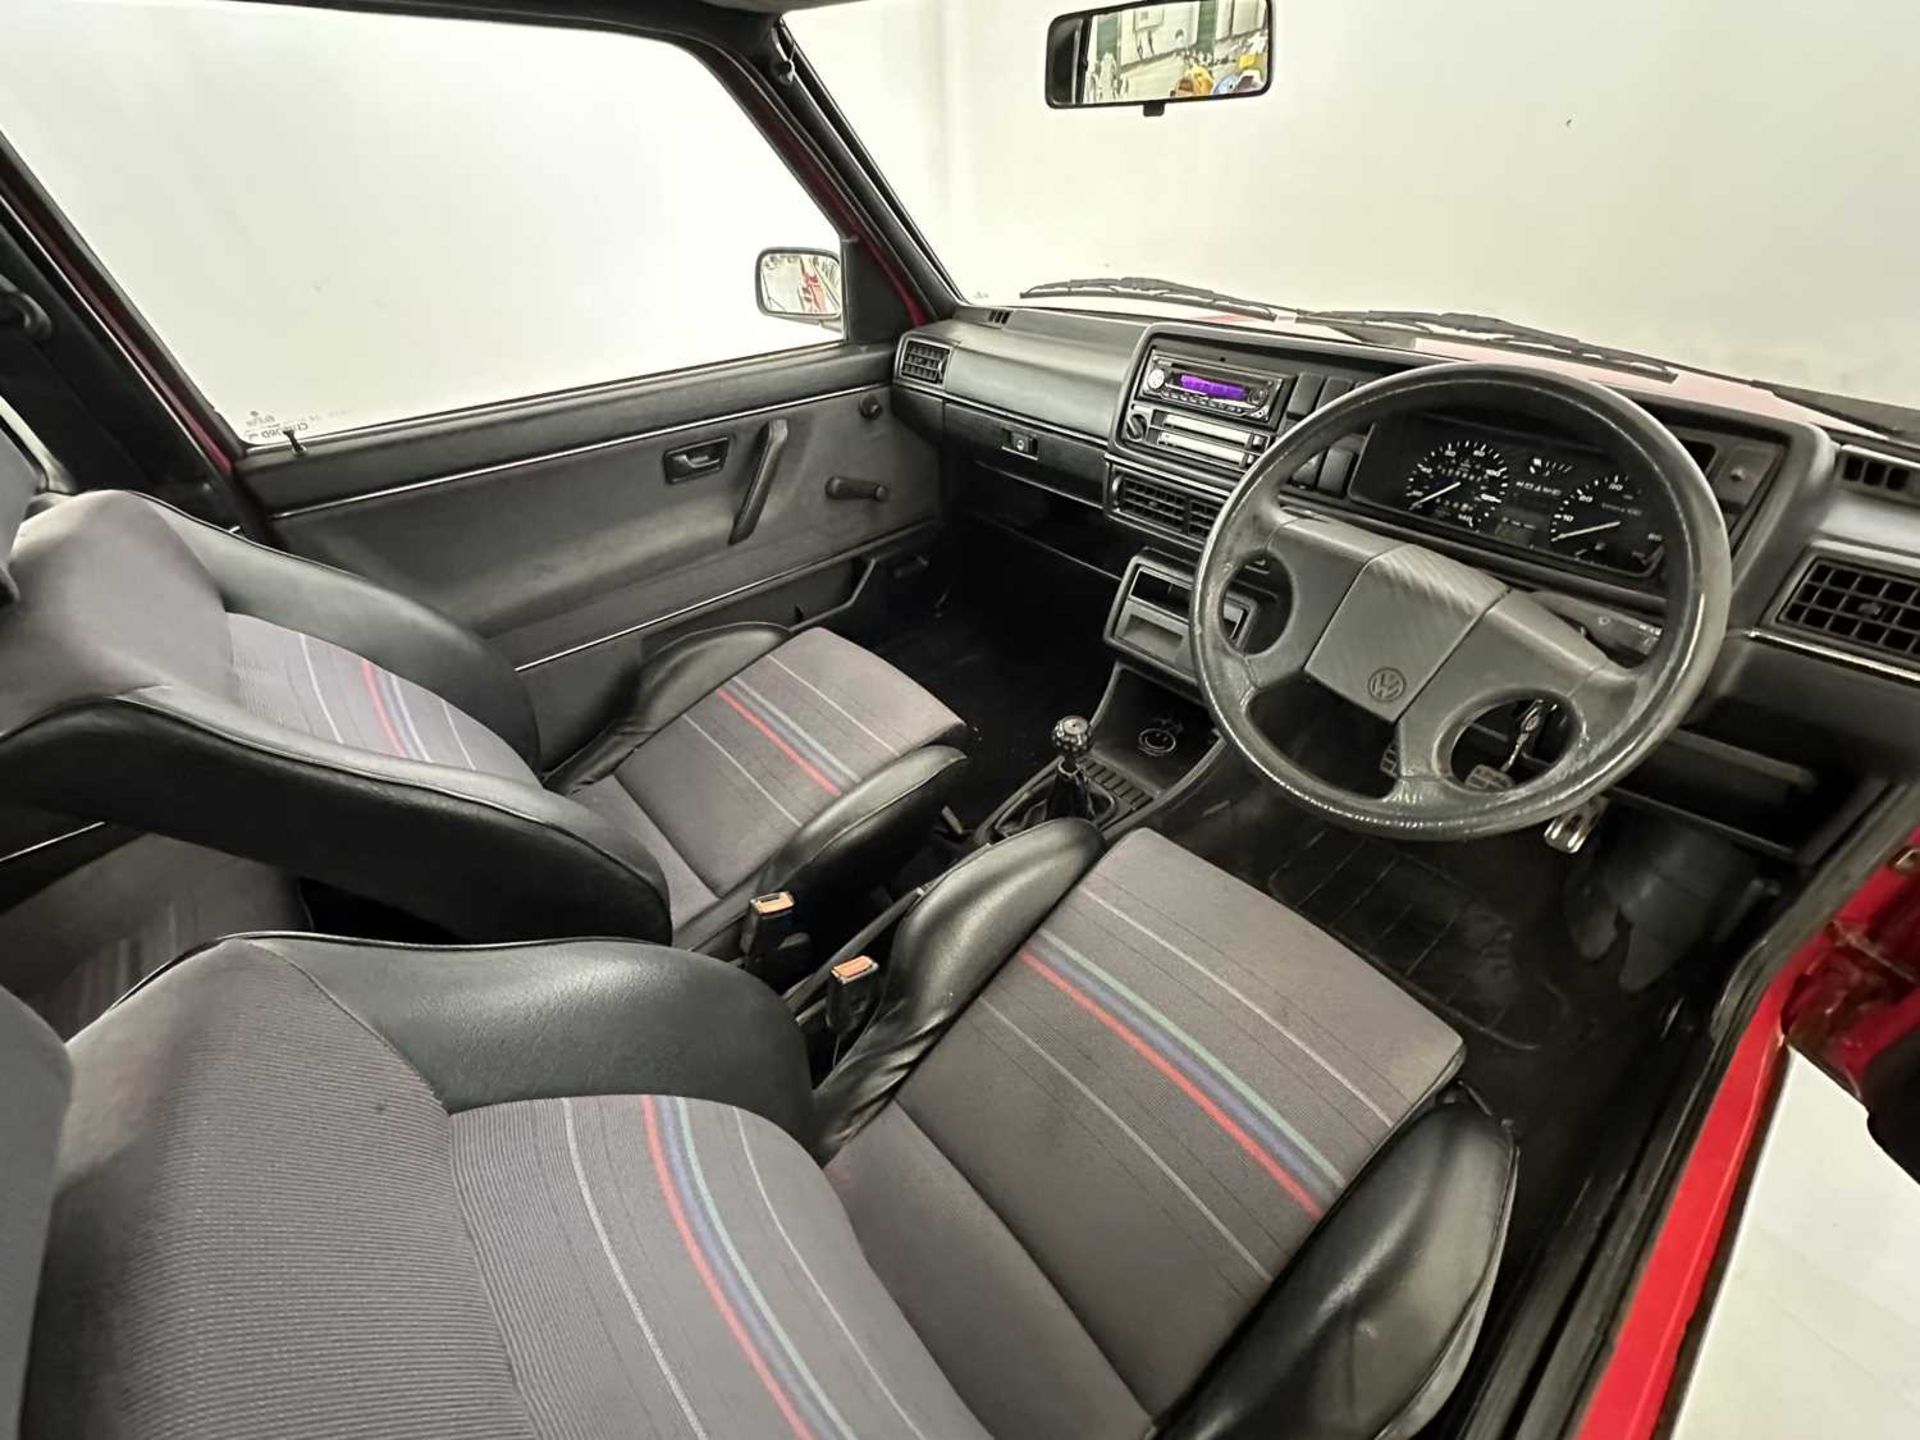 1990 Volkswagen Golf GTI - Image 19 of 30